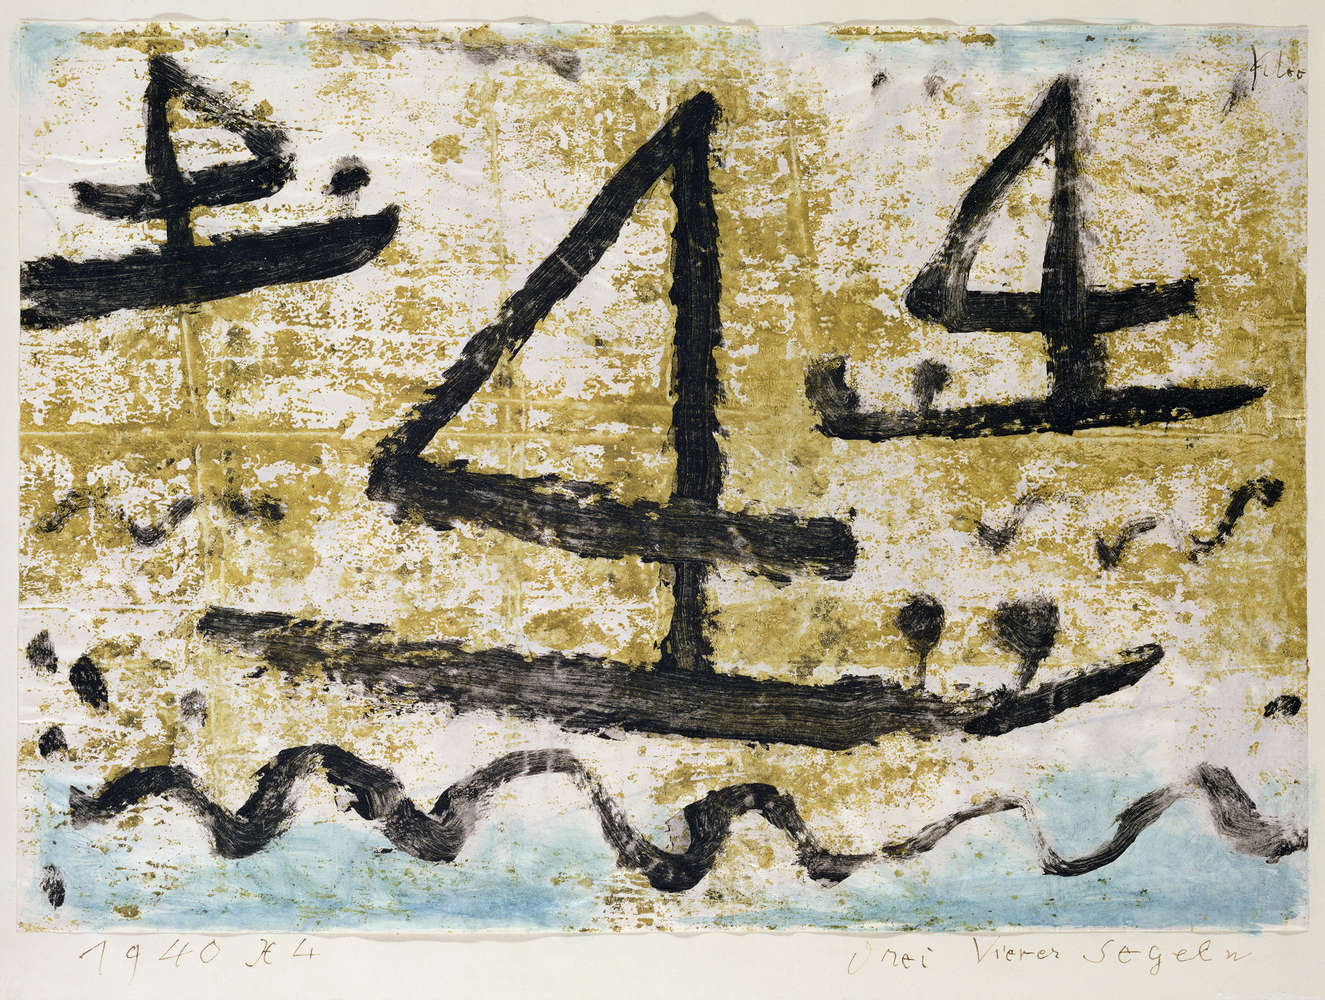             Mural "Barcos de vela" de Paul Klee
        